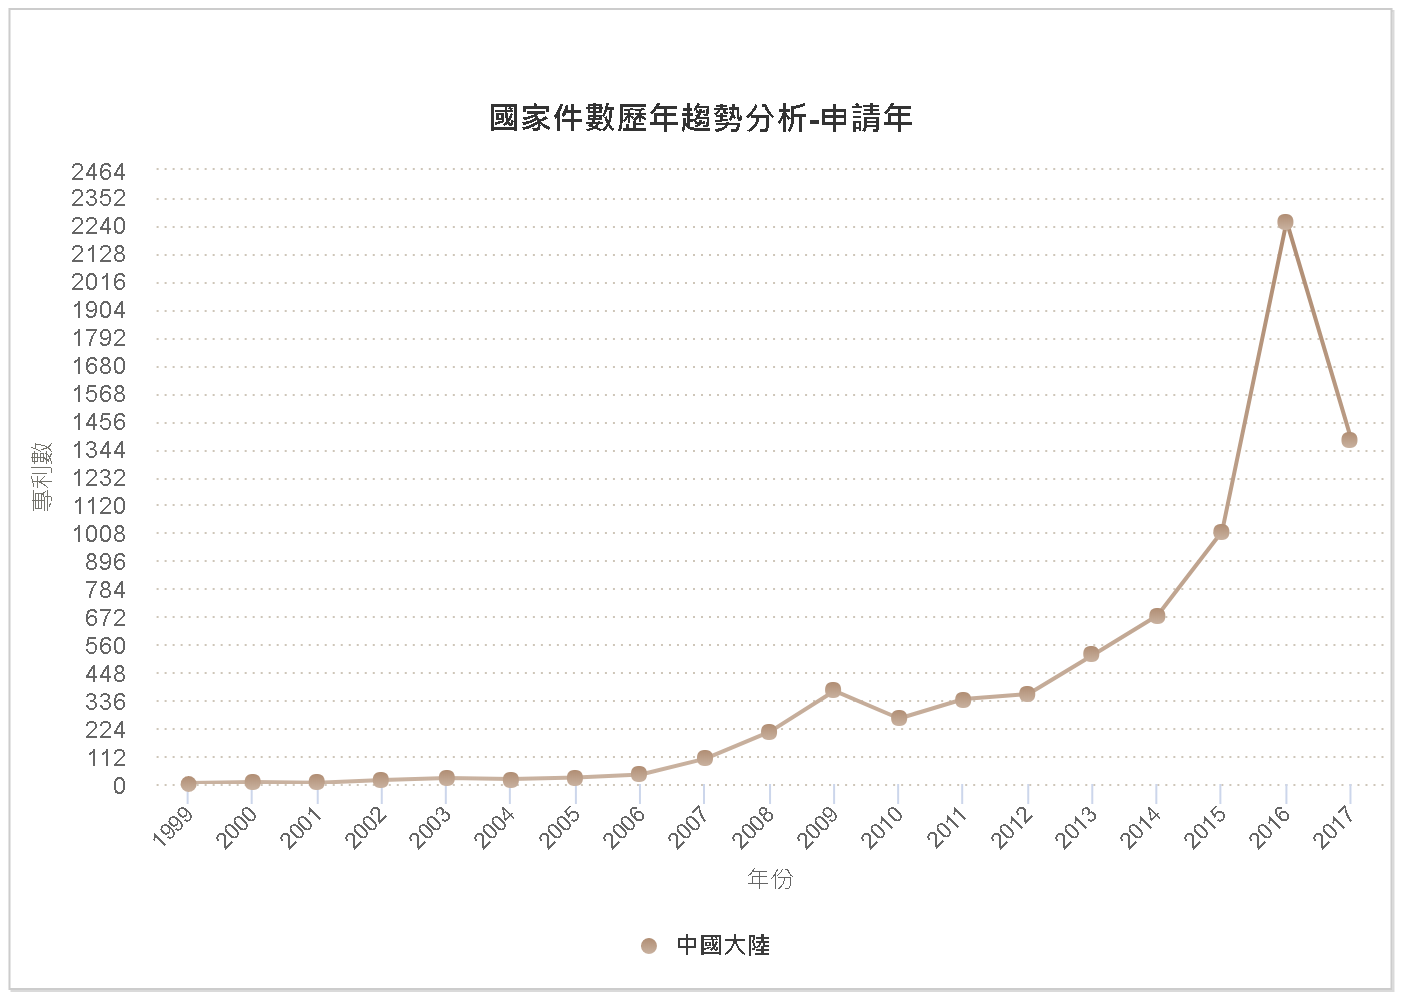 國家件數歷年趨勢分析圖–中國大陸(中國大陸)